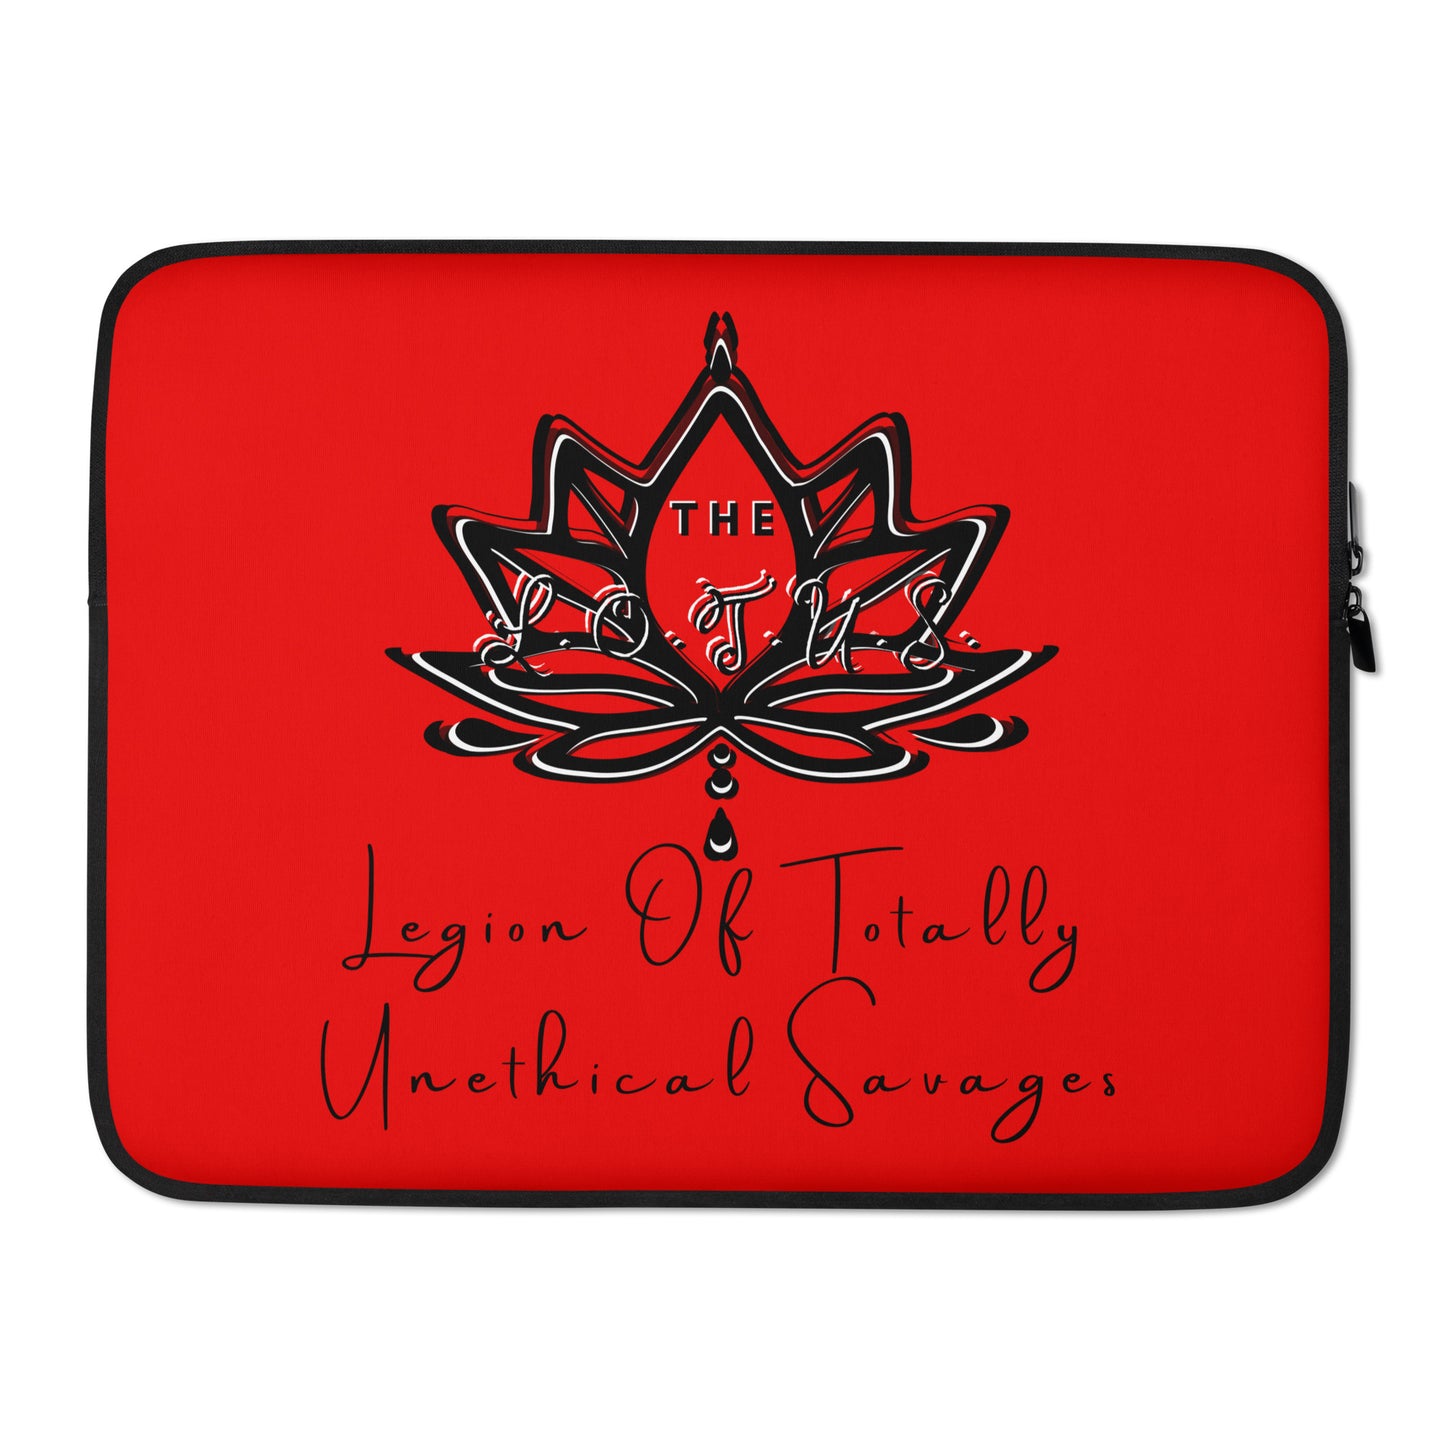 'The LOTUS' Full Logo 2 - Red Laptop Sleeve